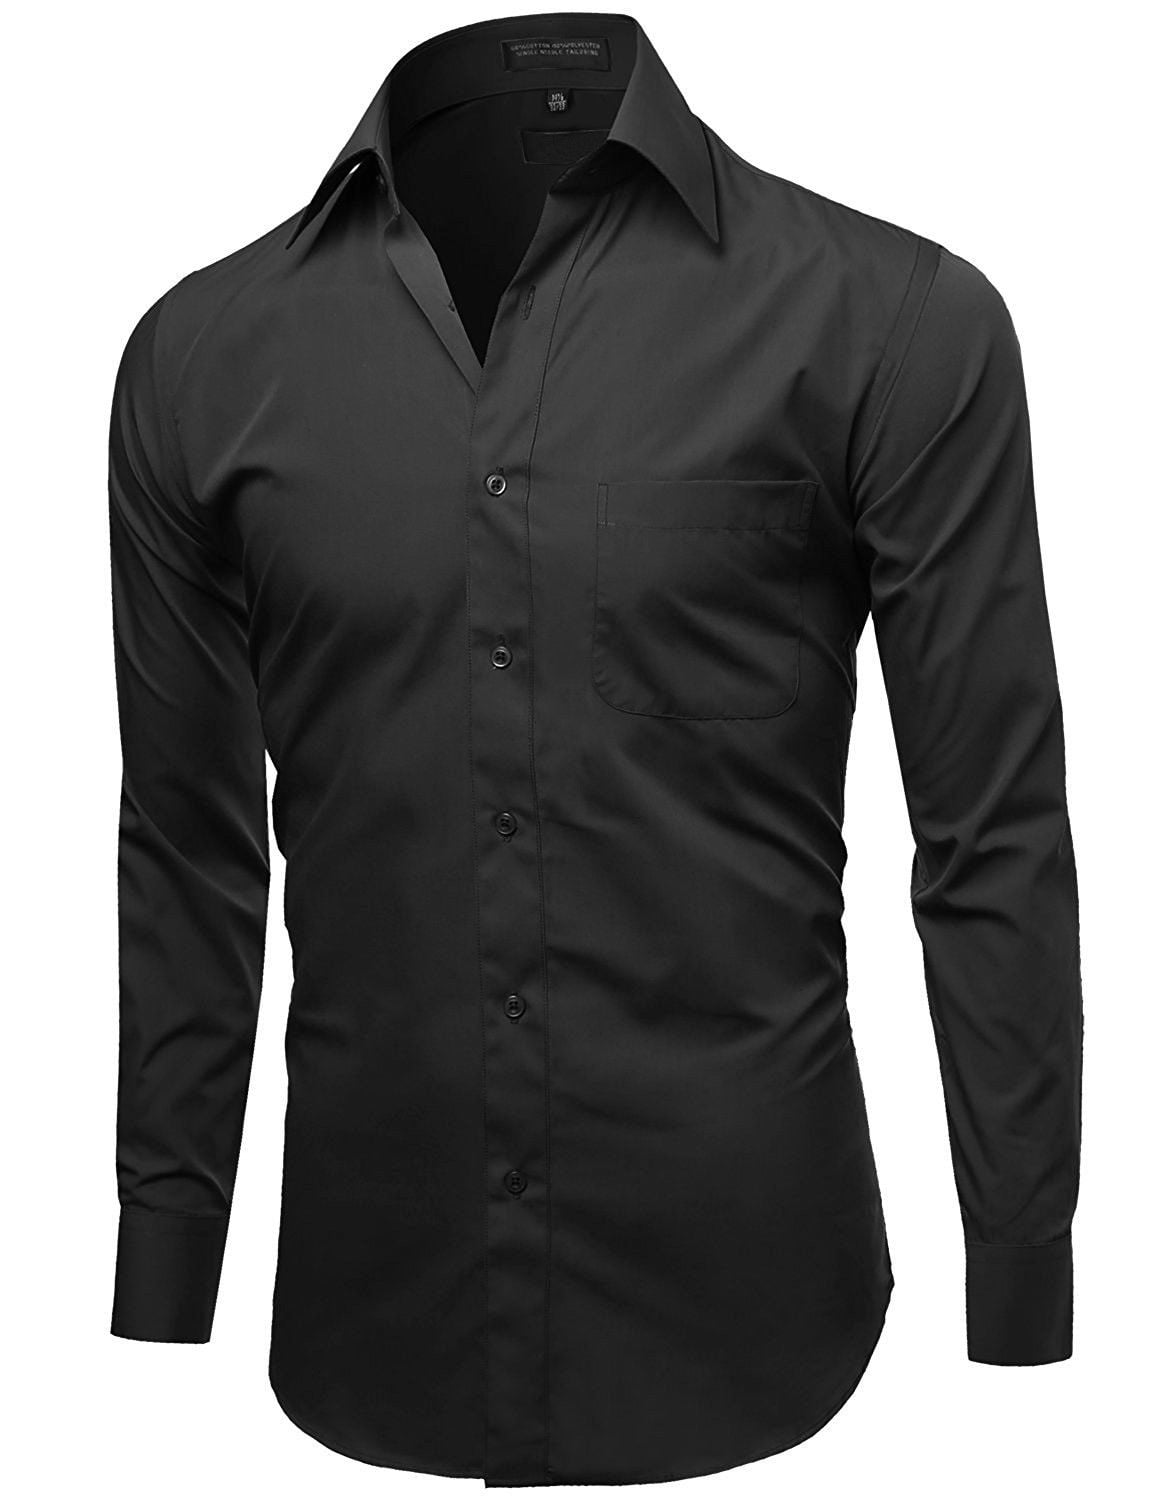 black dress shirt for men